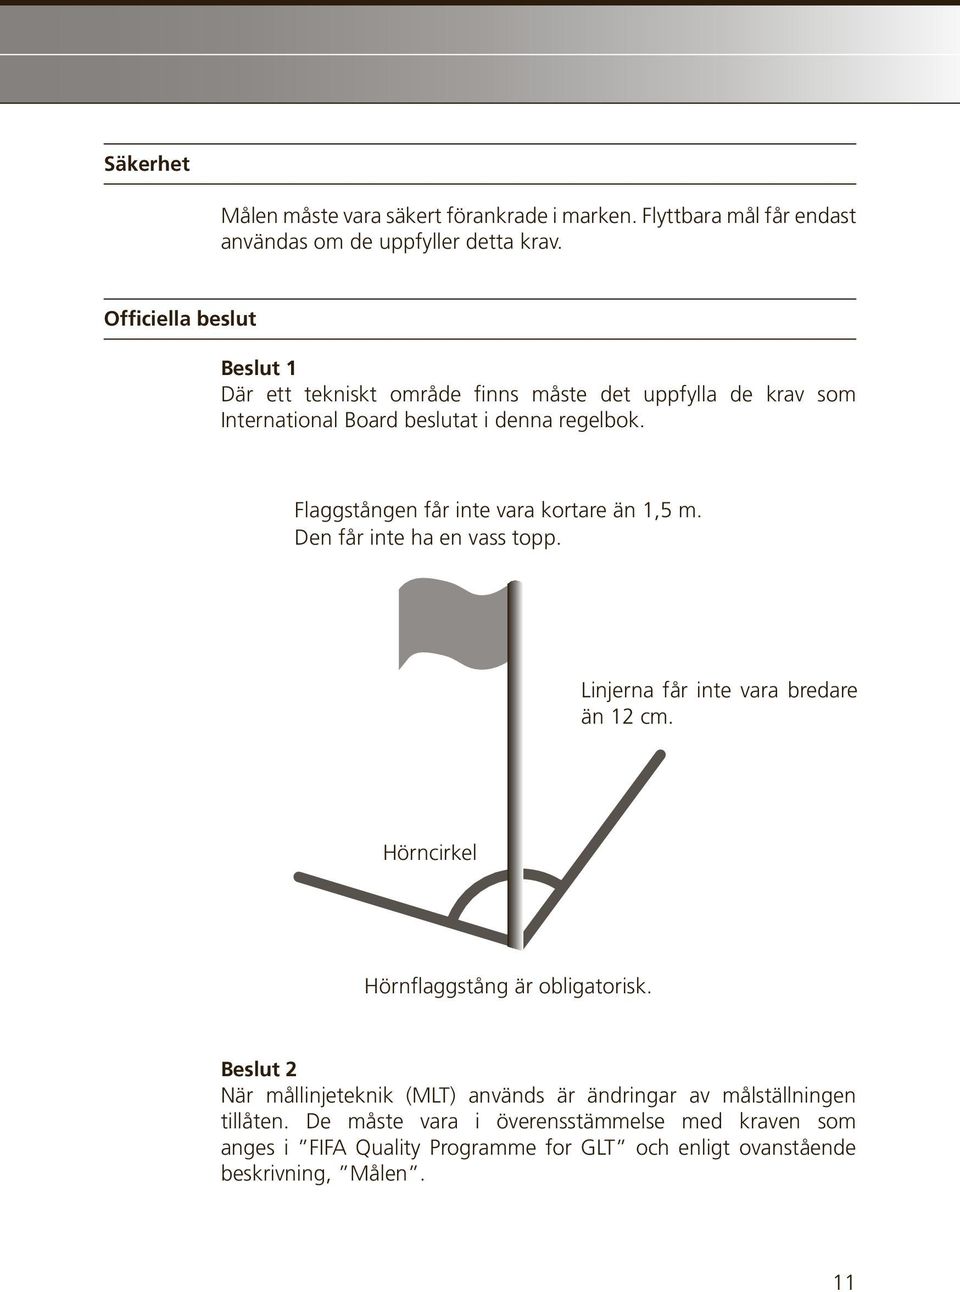 Flaggstången får inte vara kortare än 1,5 m. Den får inte ha en vass topp. Linjerna får inte vara bredare än 12 cm.